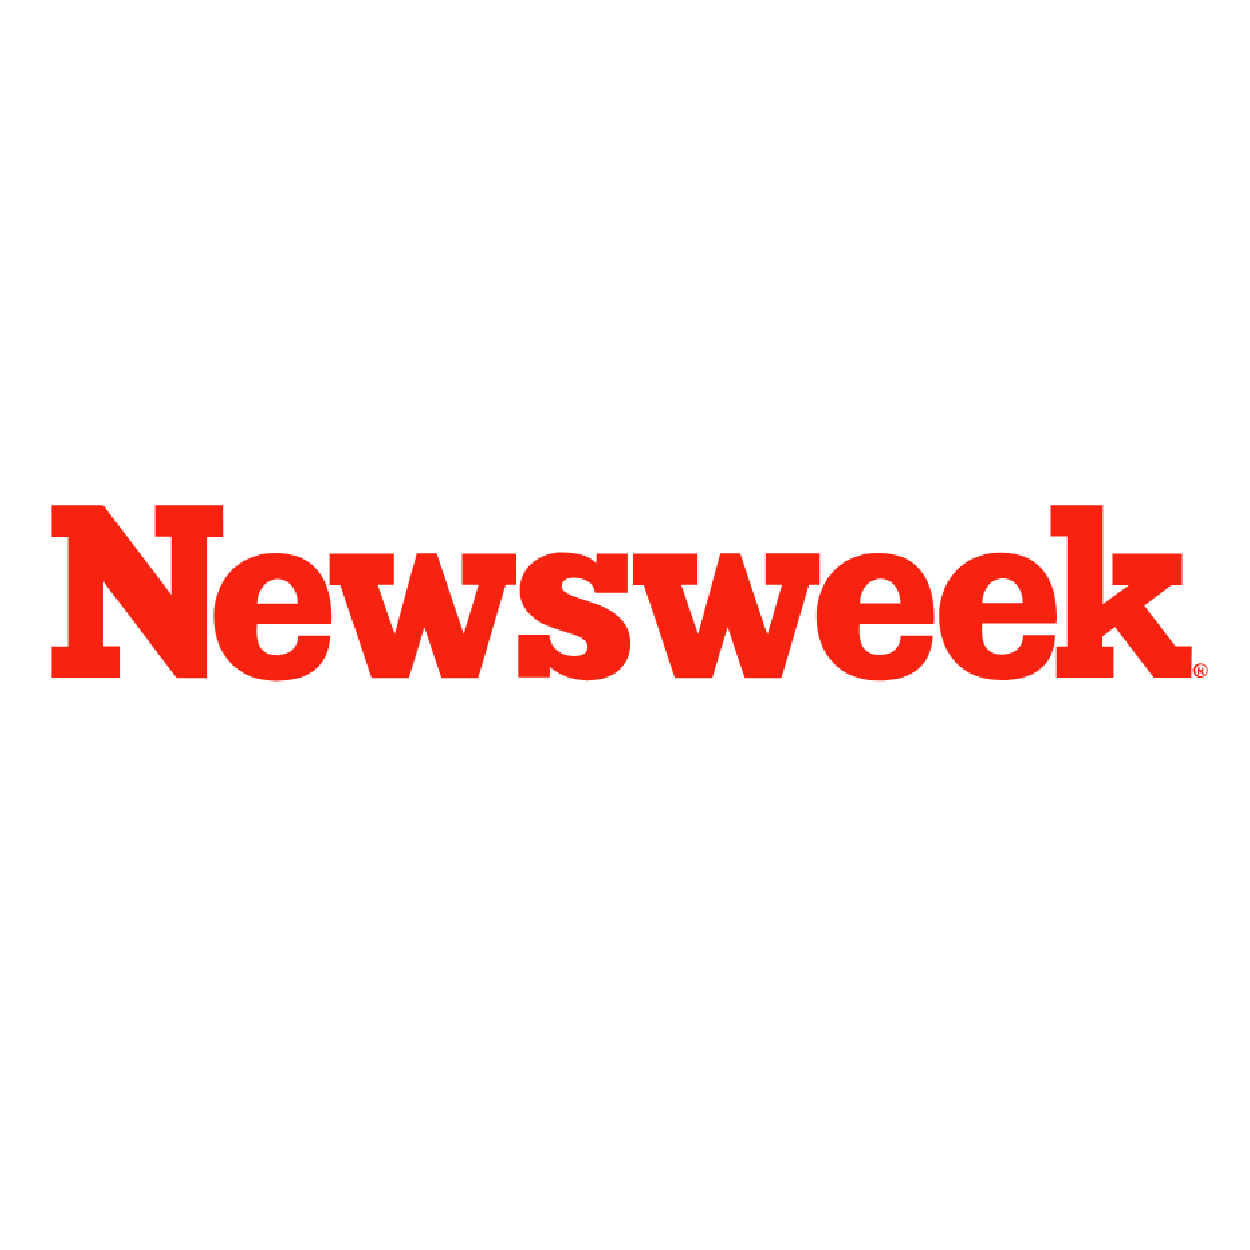 Newsweek article